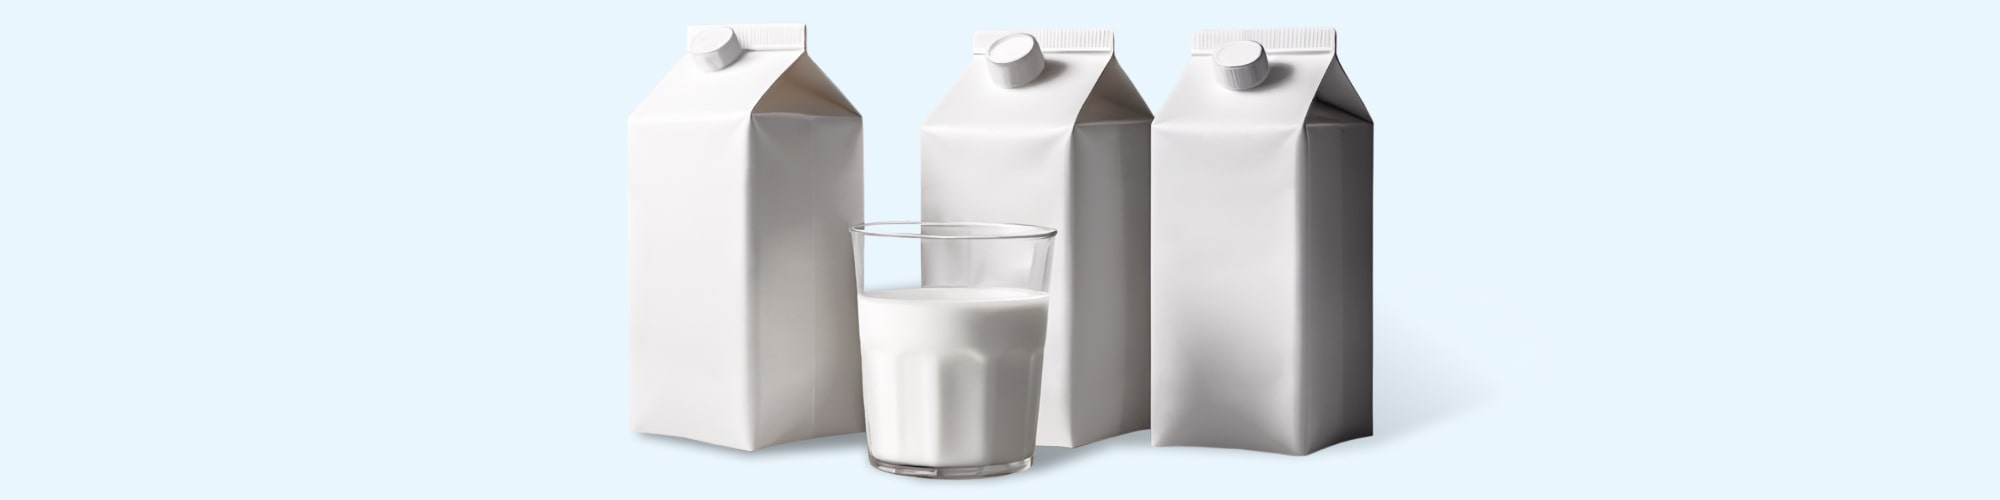 Гофрокартон и упаковка для молока и молочных продуктов